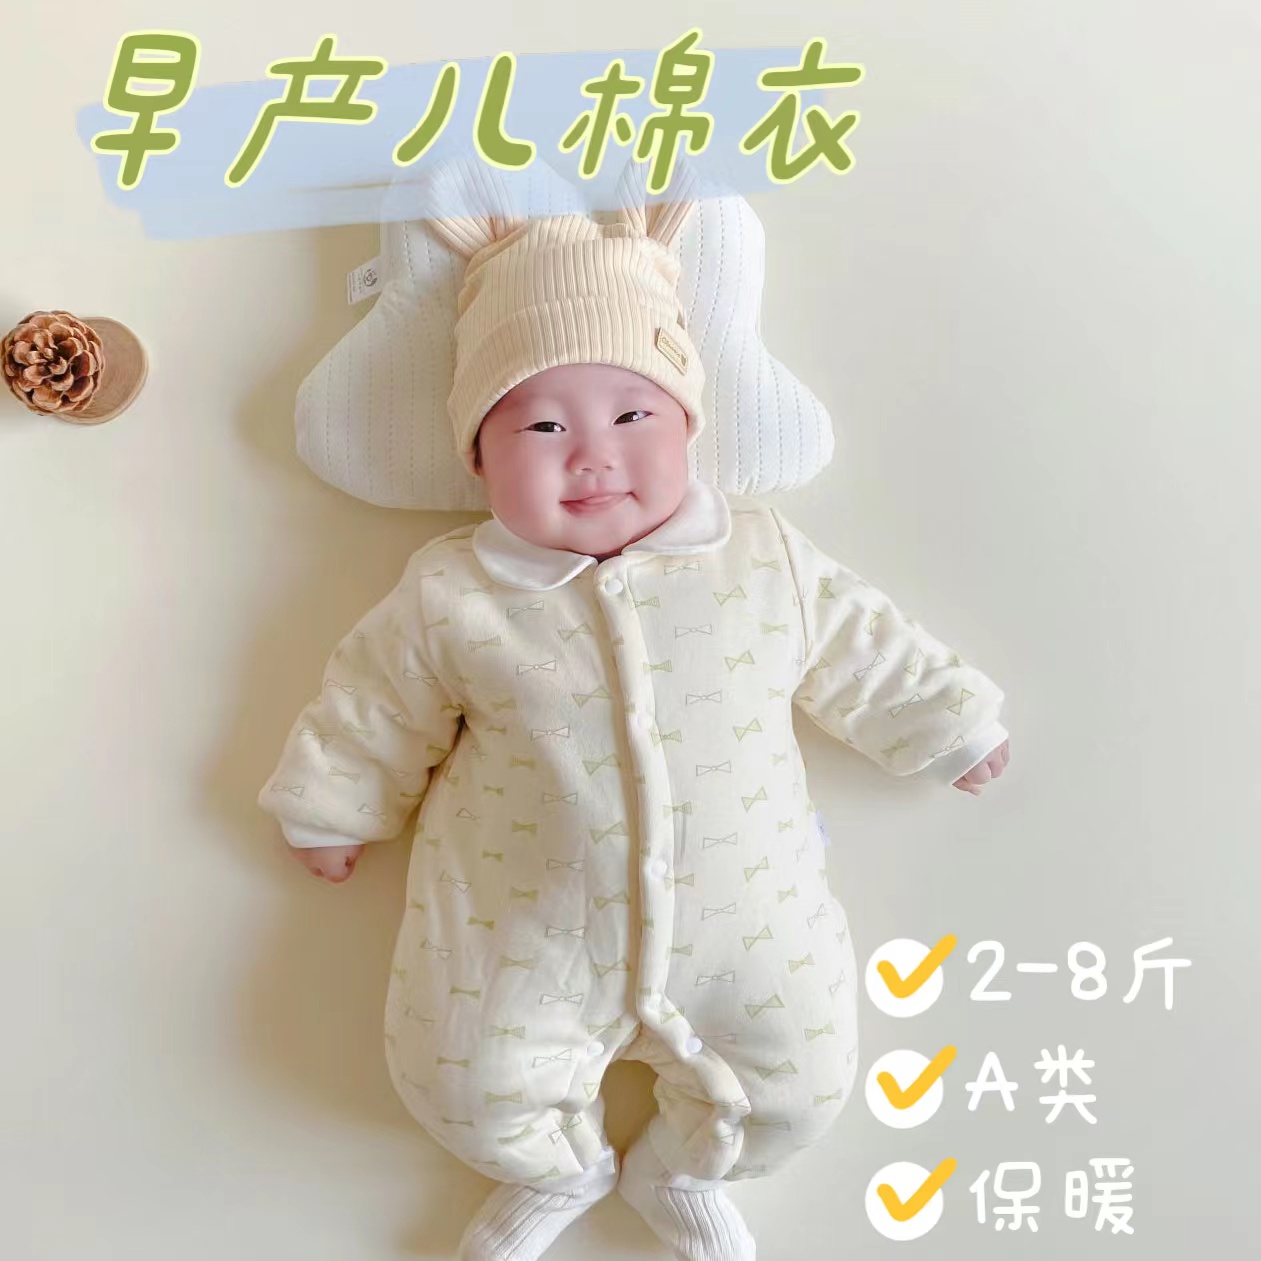 早产儿婴儿衣服小码48码秋冬季保暖厚棉衣爬服4-5斤低体重新生儿